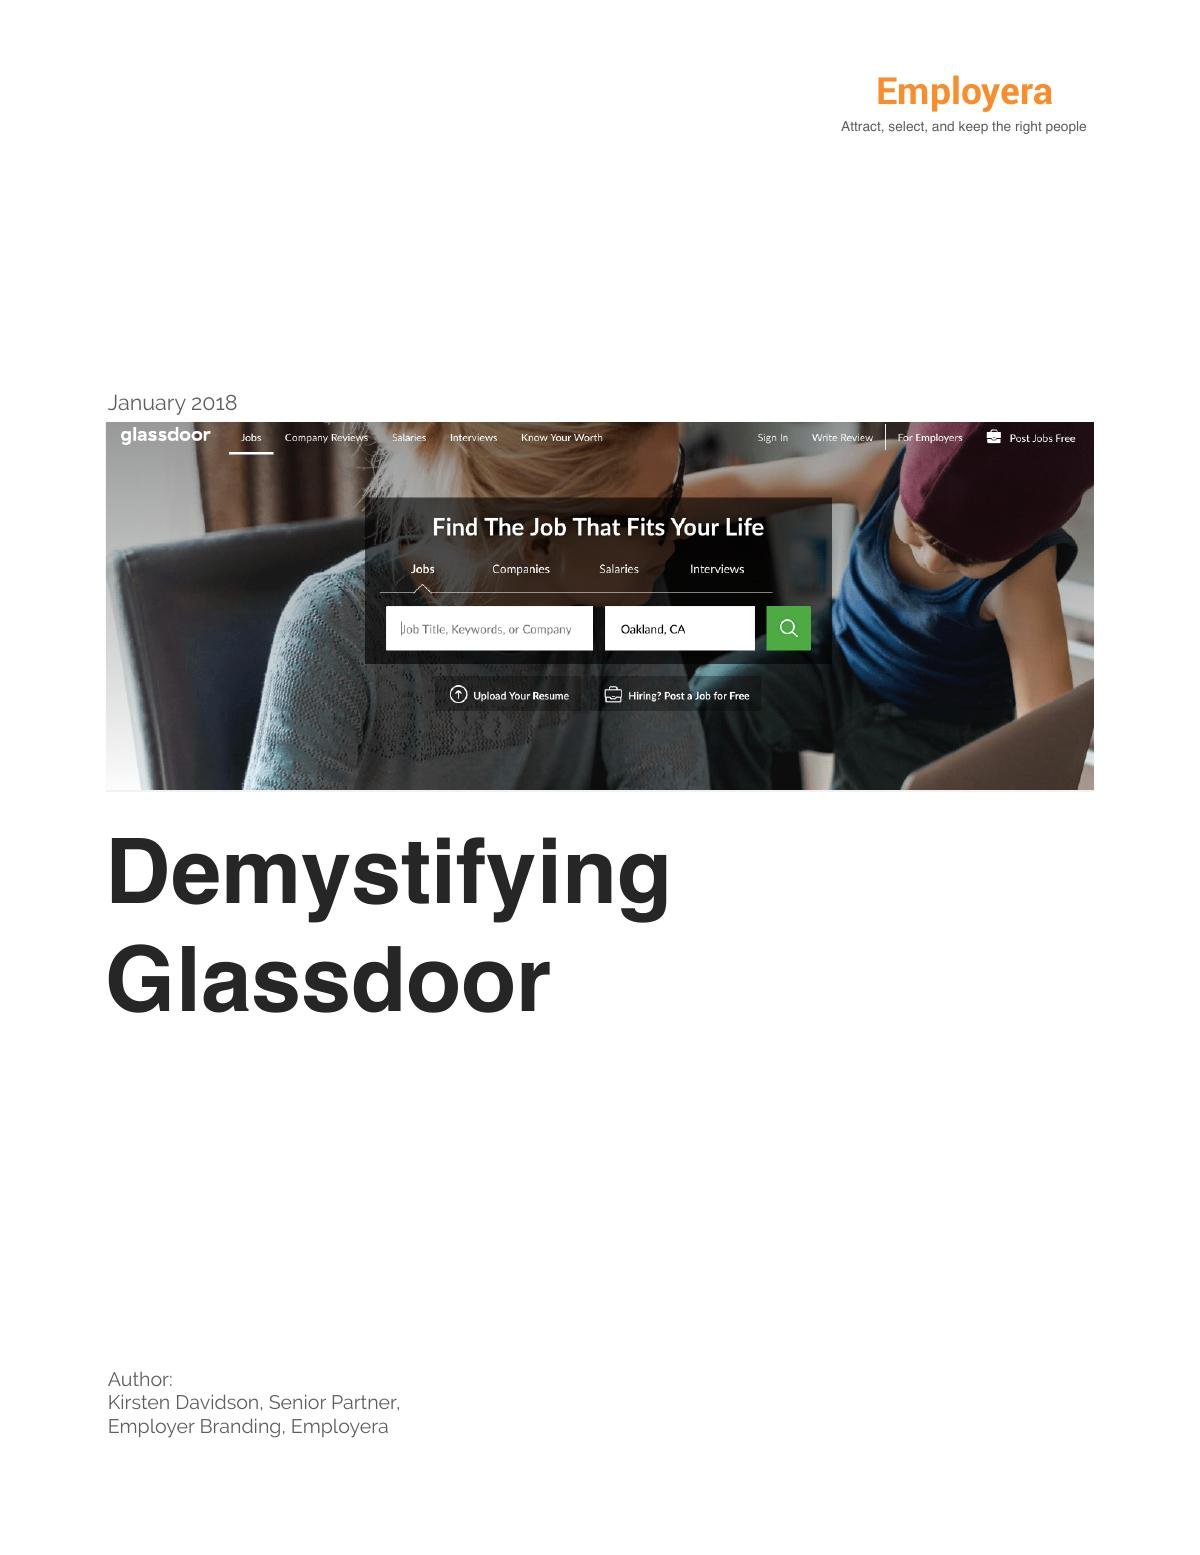 Demystifying Glassdoor